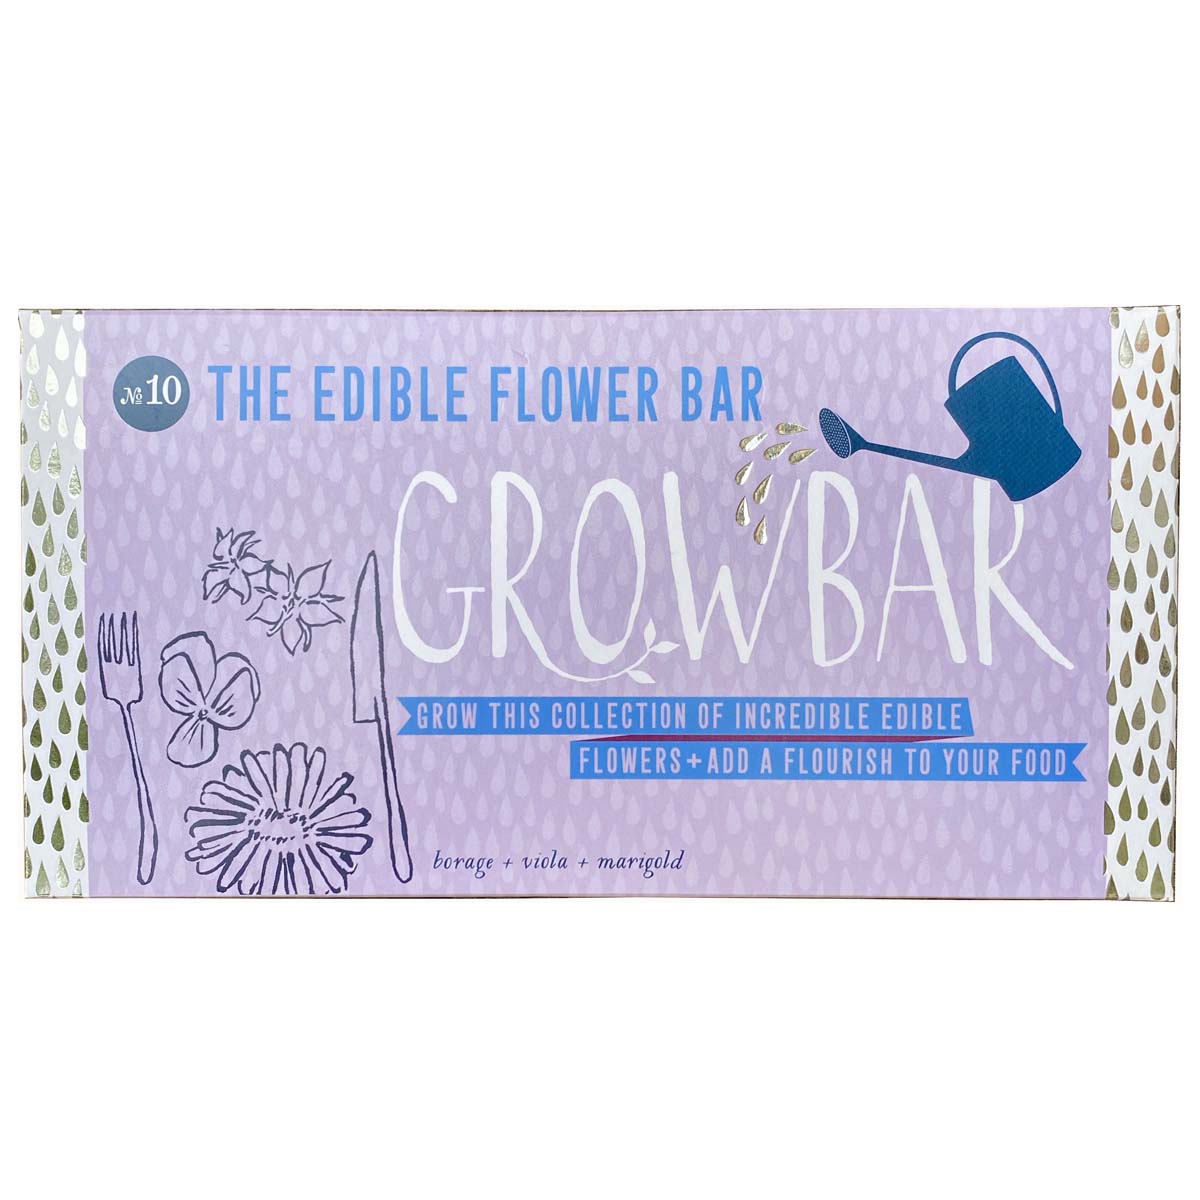 Edible Flower Growbar